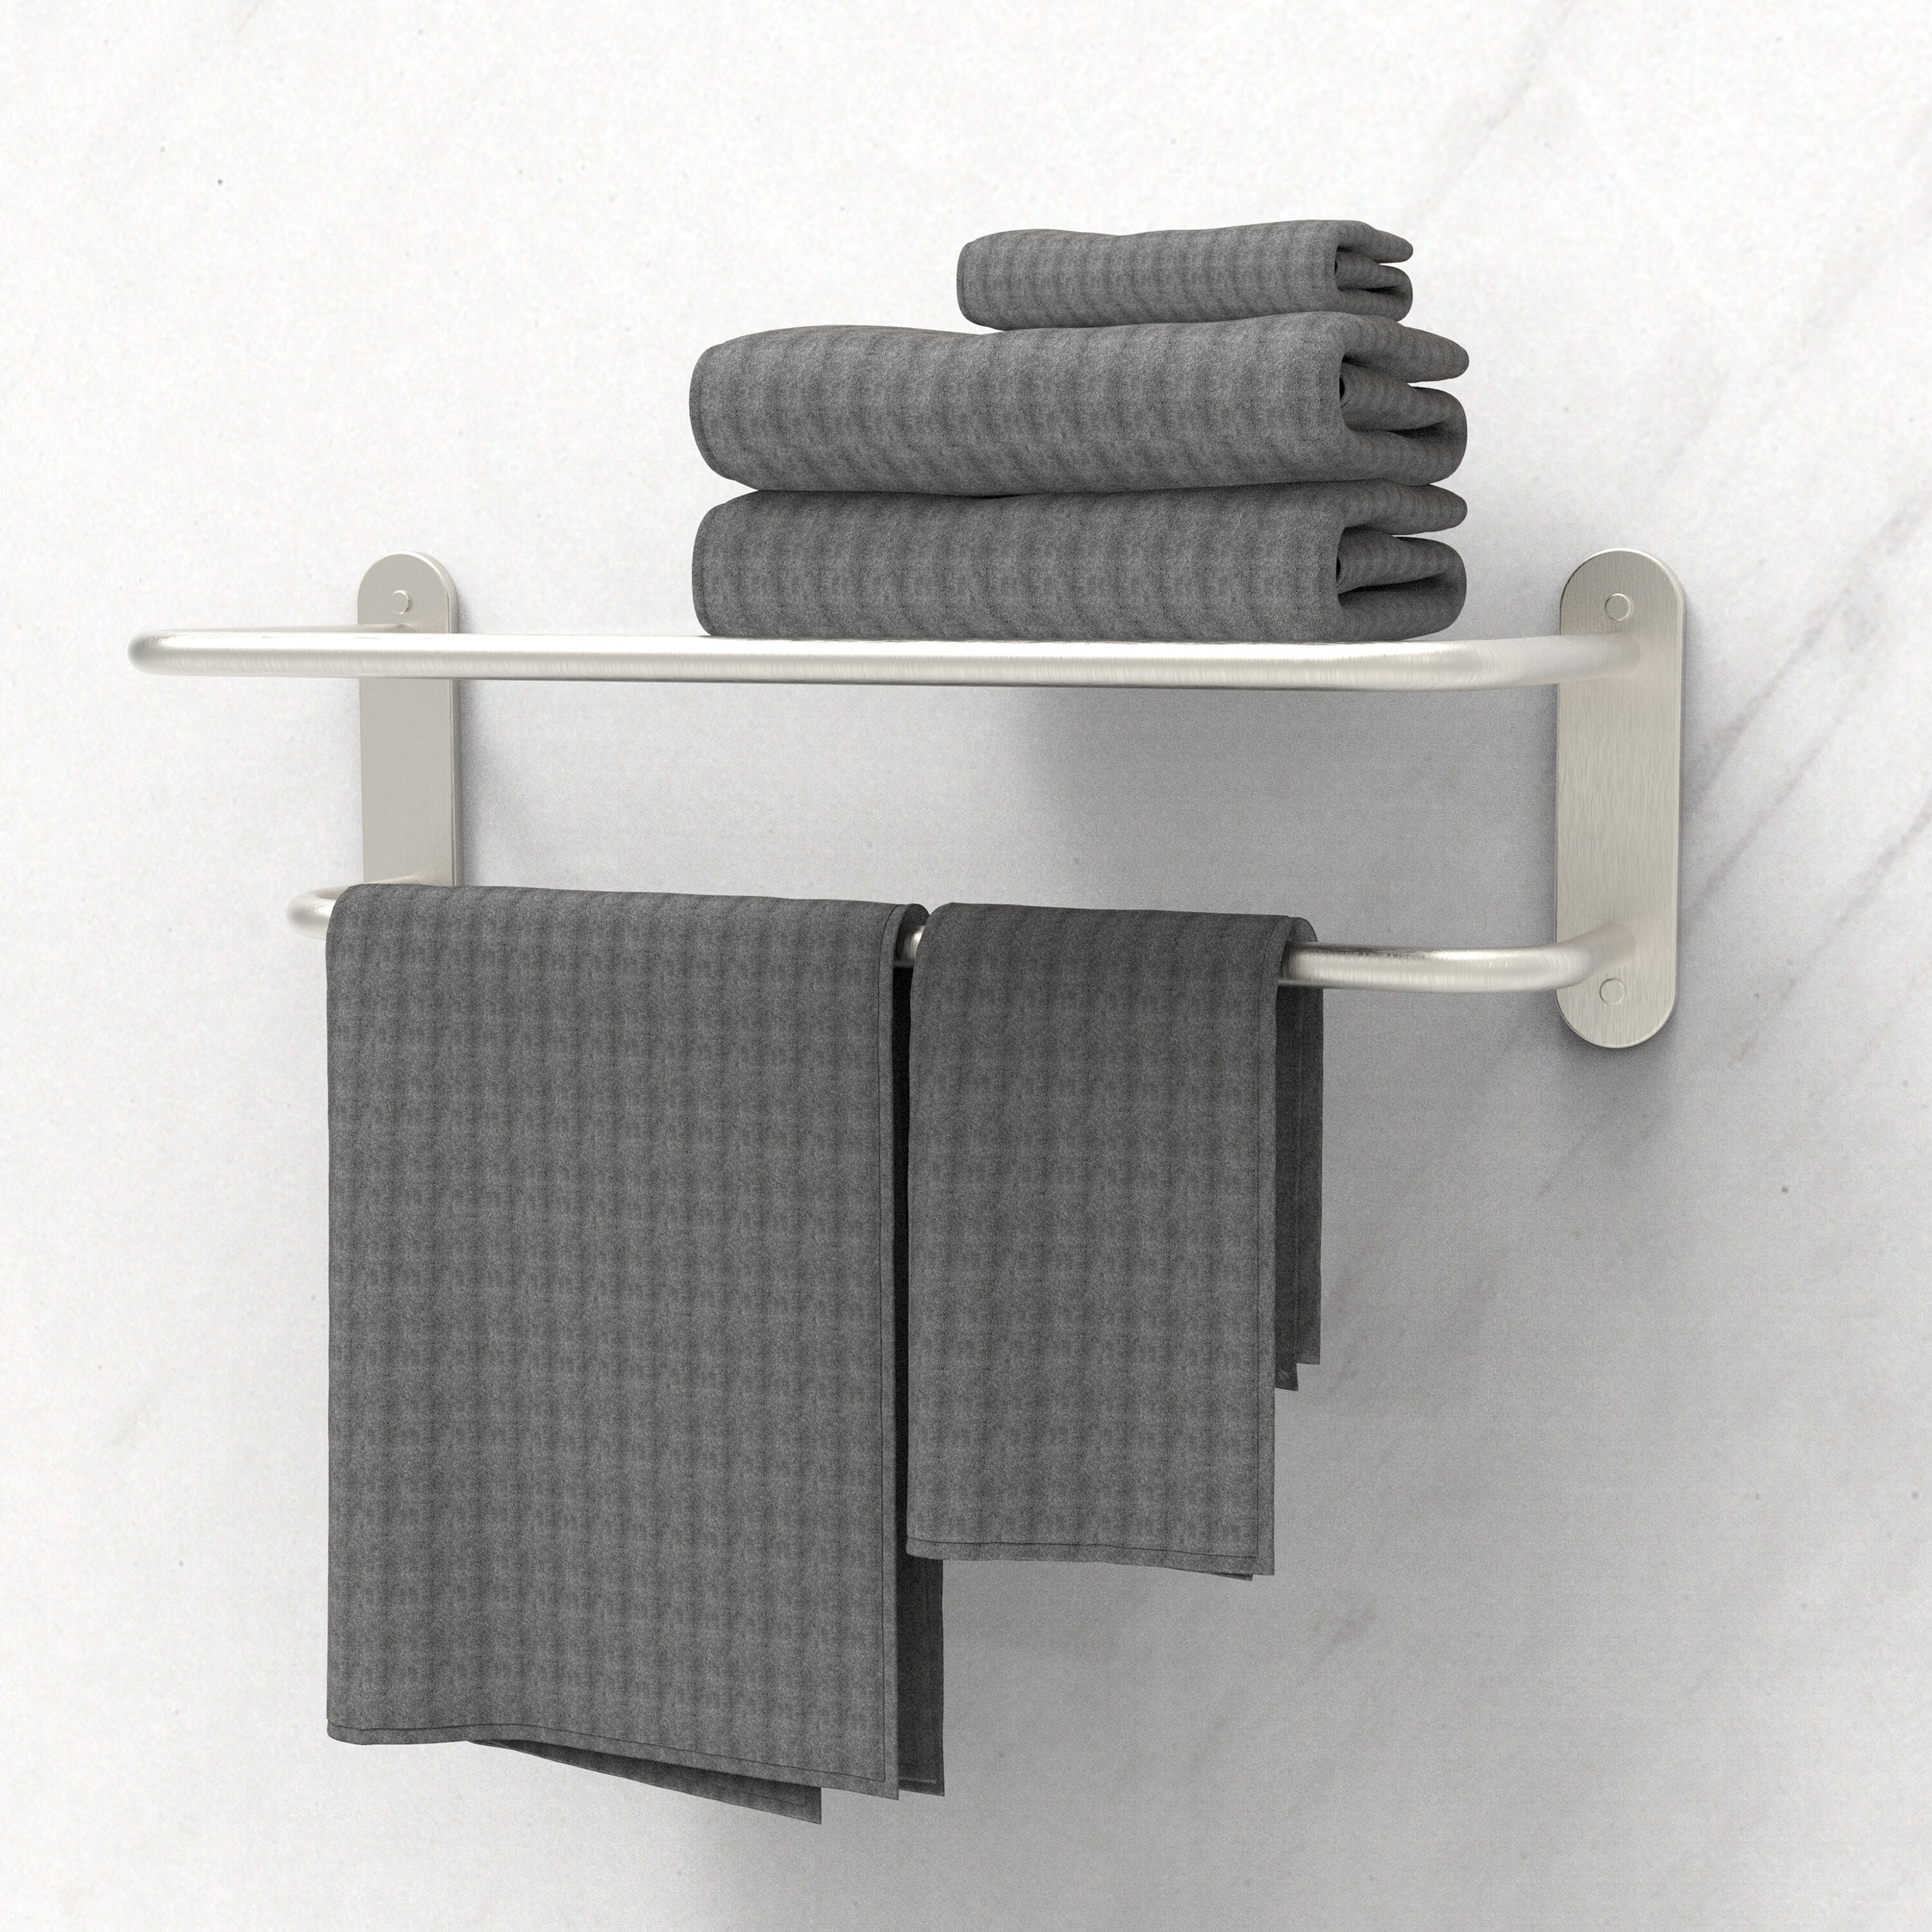 Brushed Nickel Towel Bar 18 in Wall Mount Single Bathroom Rack Towel Holder 